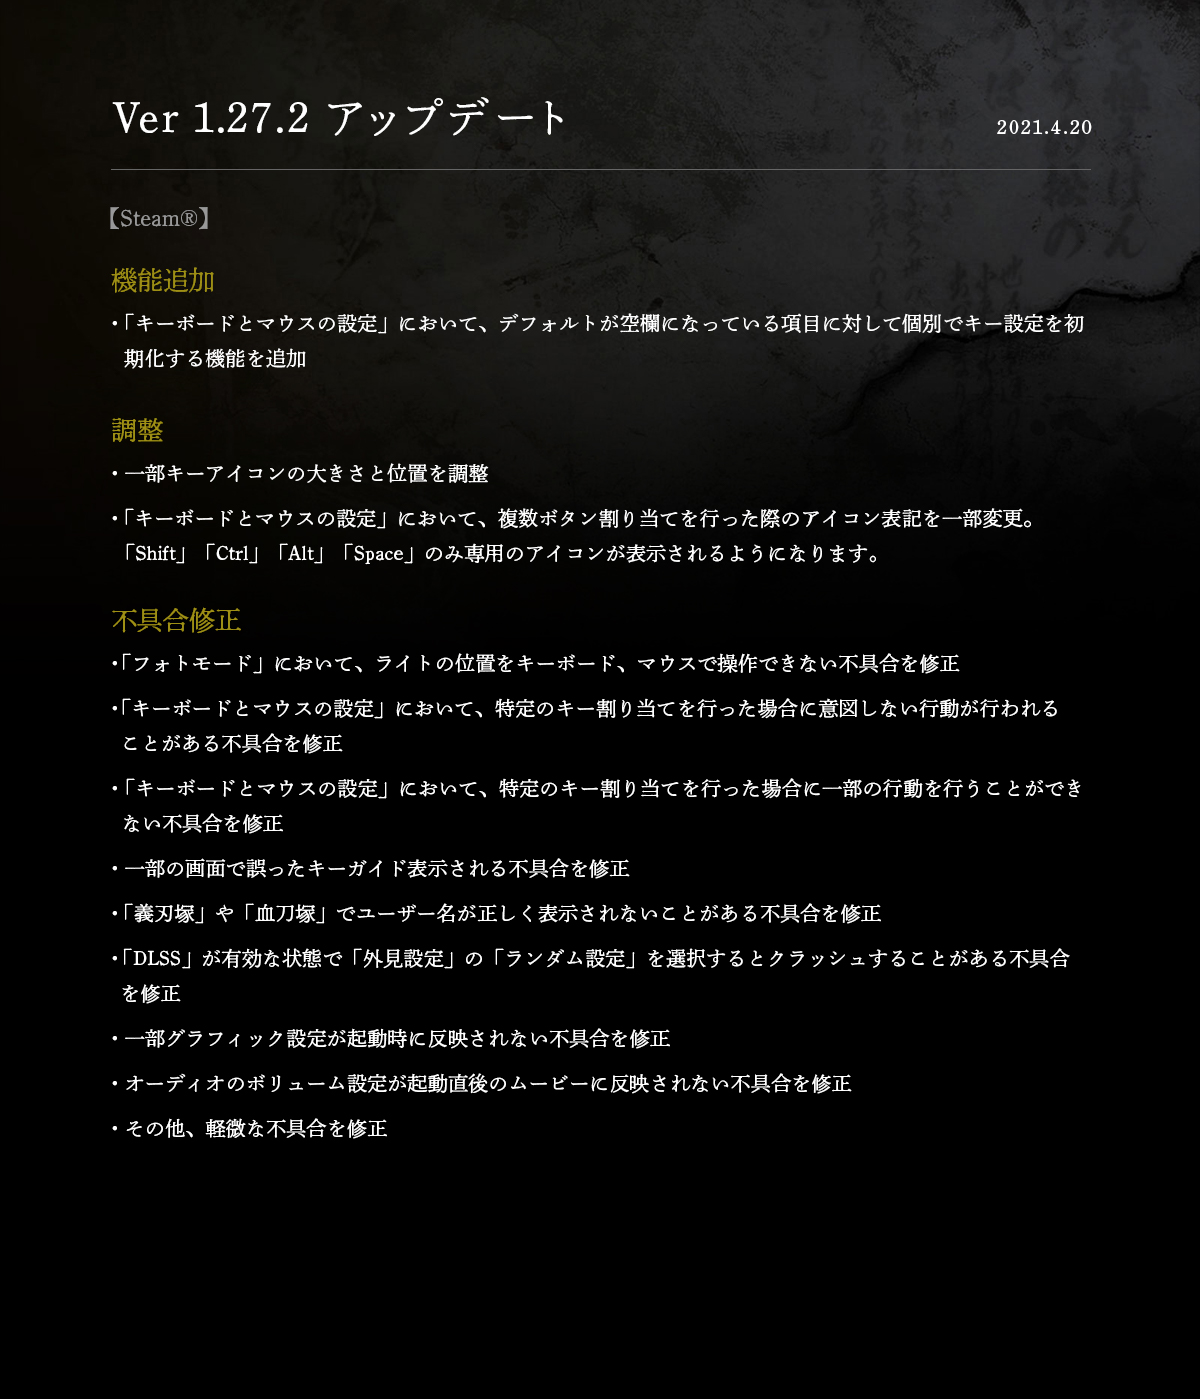 《仁王2》PC版最新更新上线 追加新机能调整修复问题